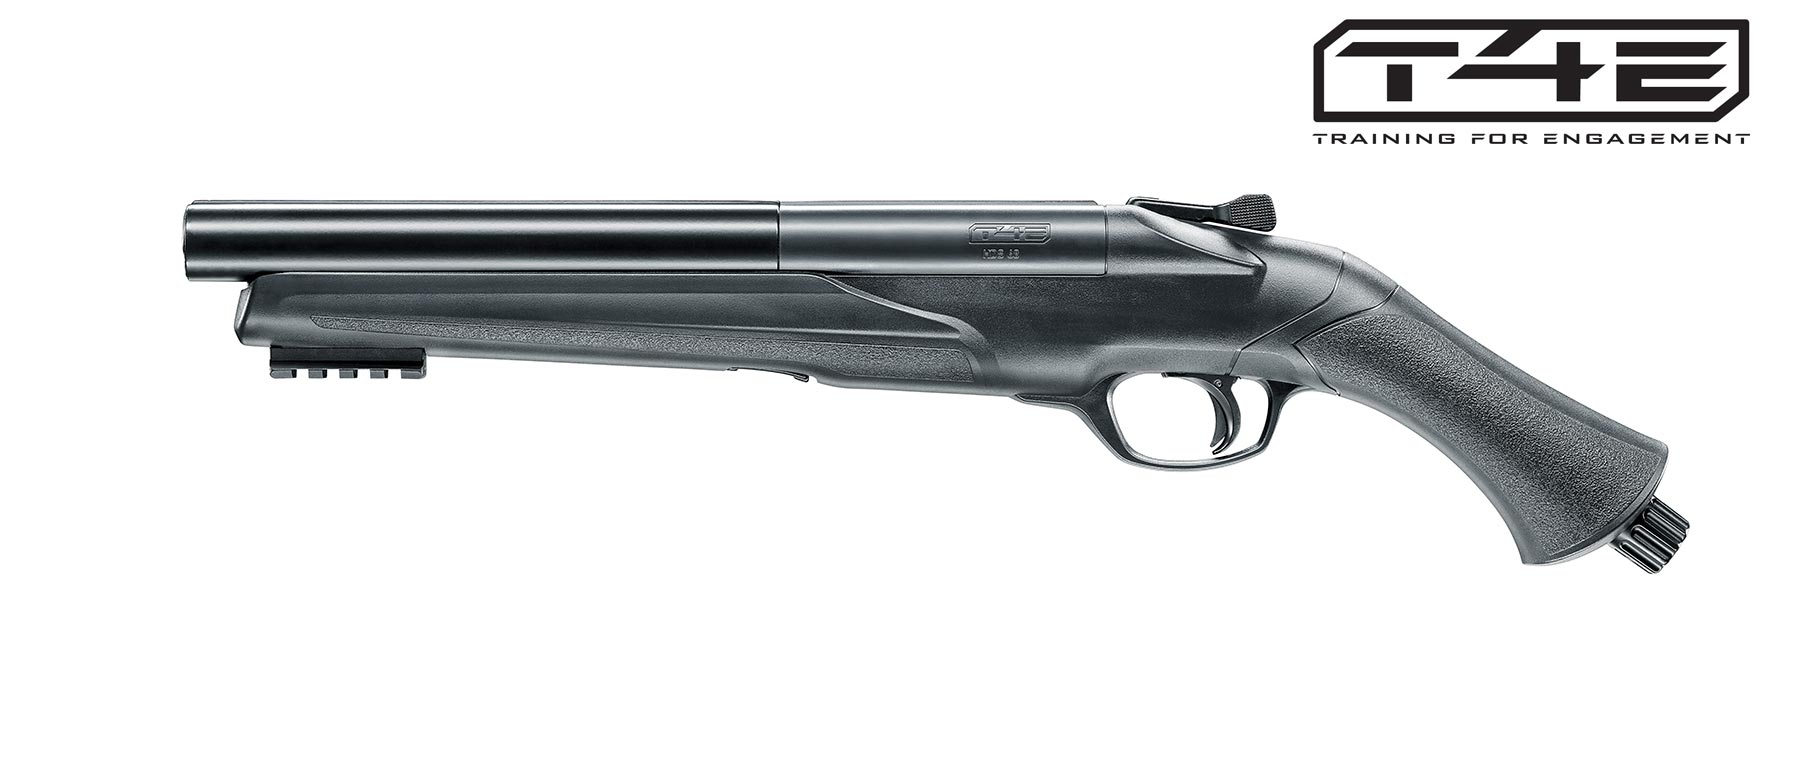 HDS 68 T4E - Home Defense Shotgun 68 mit Doppellauf. Luftgewehr-Shop -  Luftgewehre, Schreckschusswaffen, CO2 Waffen, Luftpistolen kaufen